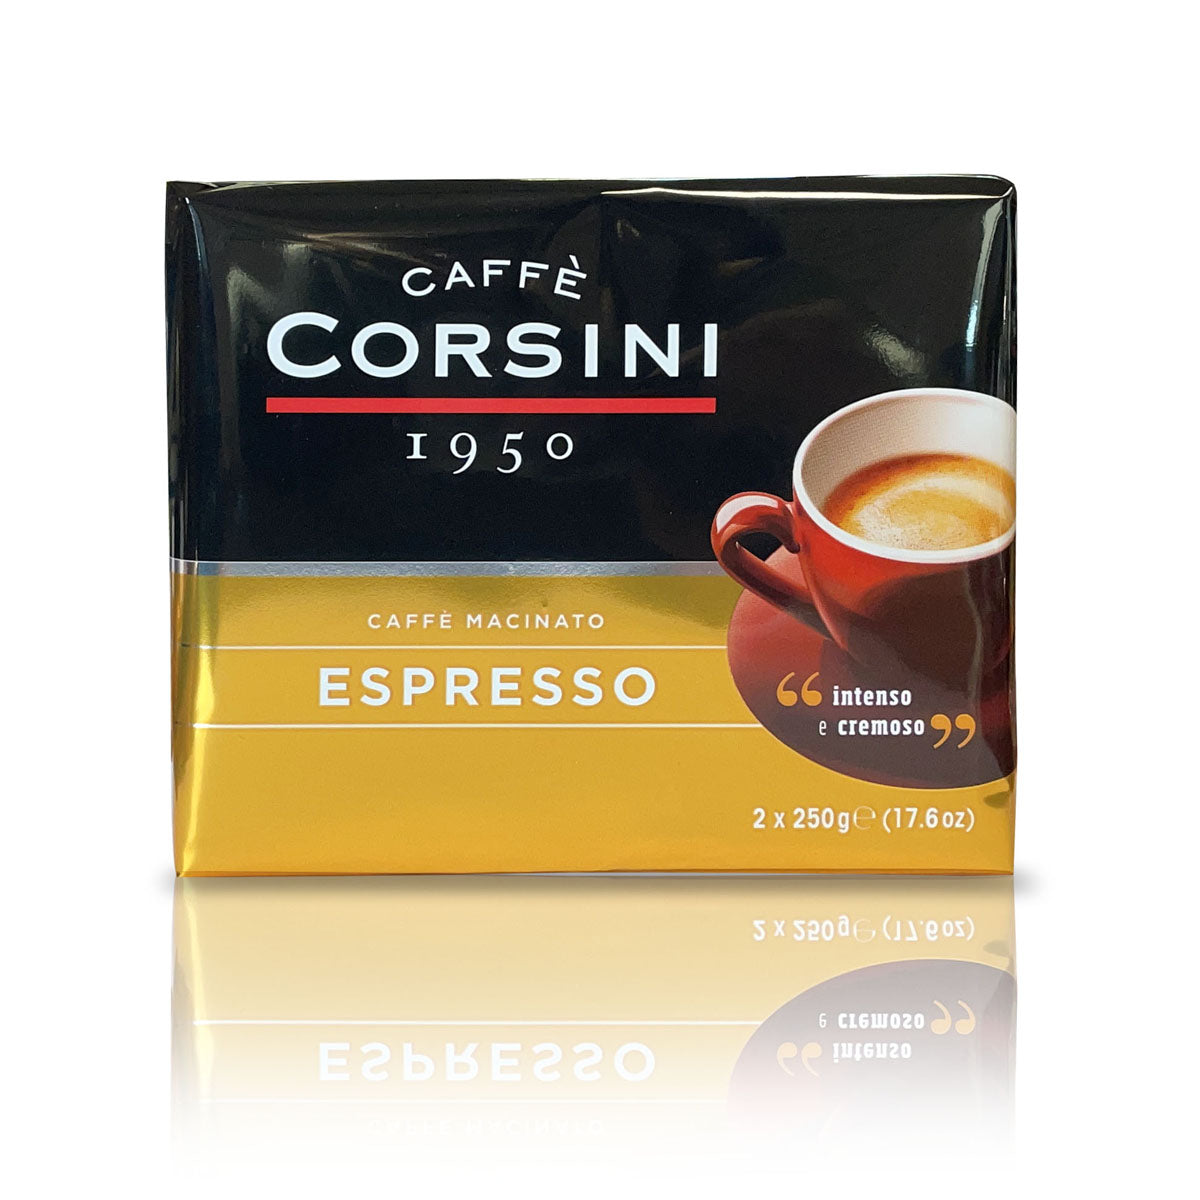 Caffè macinato per Espresso | Confezione con 2 pacchetti da 250g l'uno